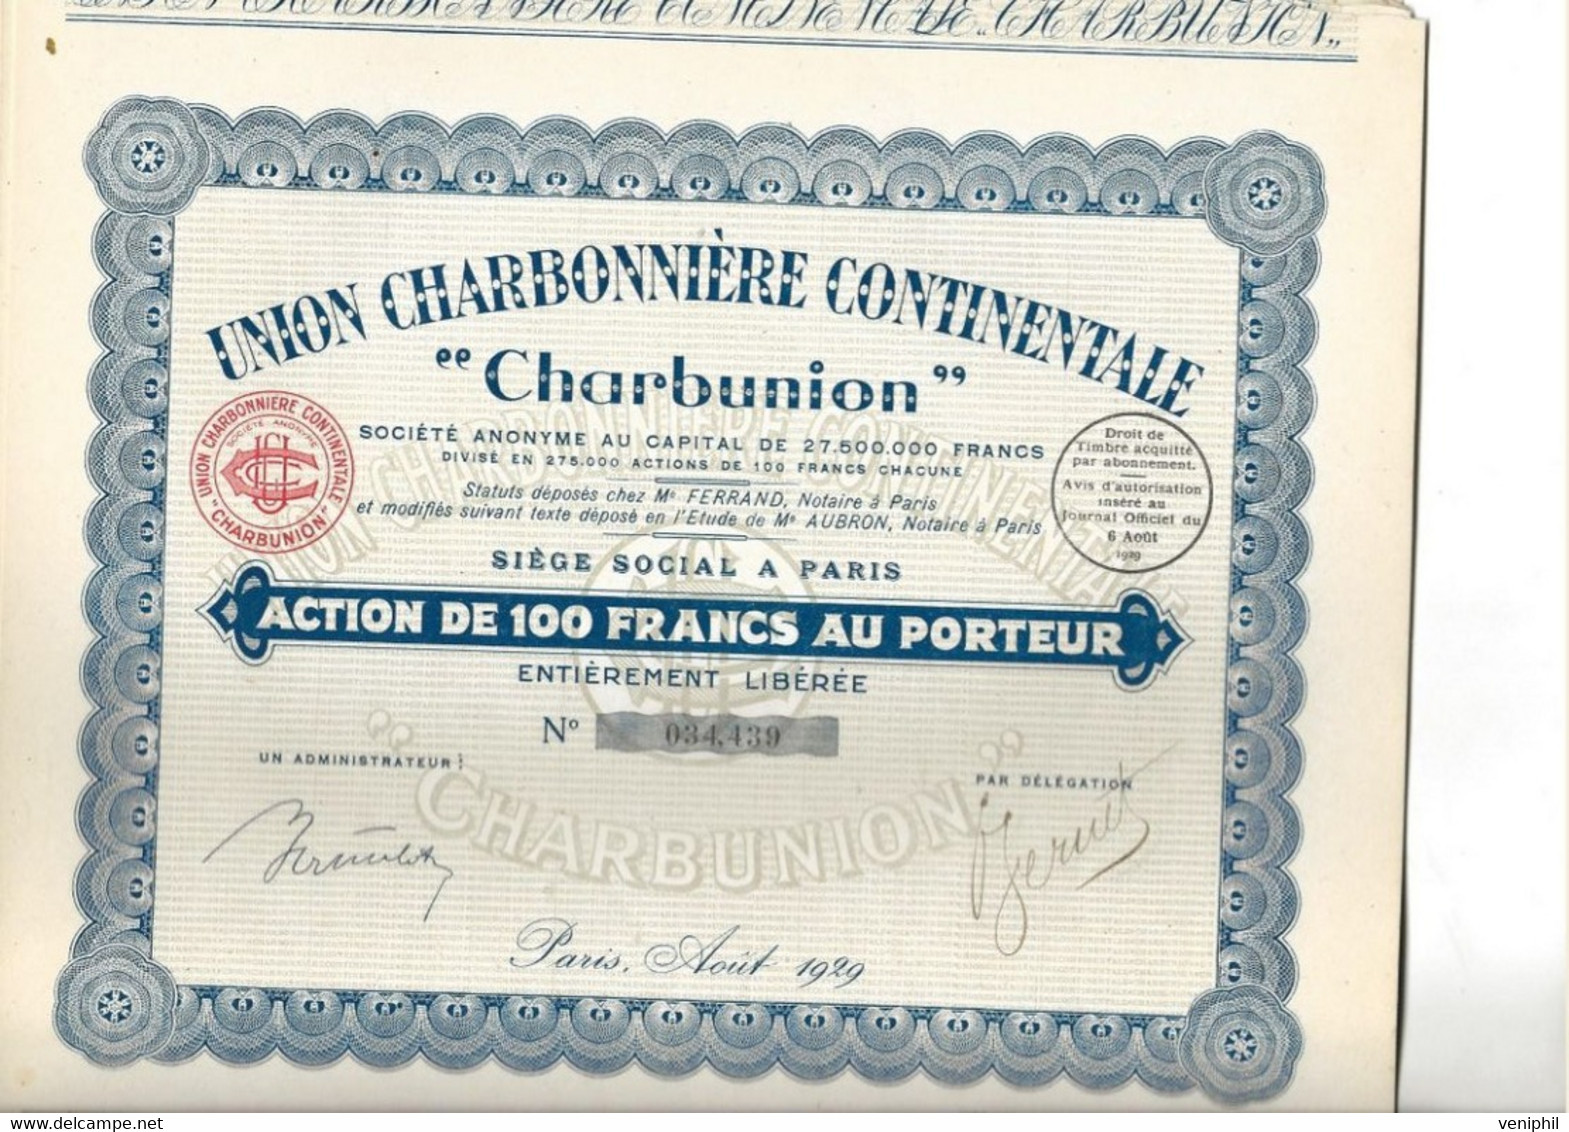 UNION CHARBONNIERE CONTINENTALE " CHARBUNION " - LOT DE 12 ACTIONS DE 100 FRS - ANNEE 1929 - Bergbau